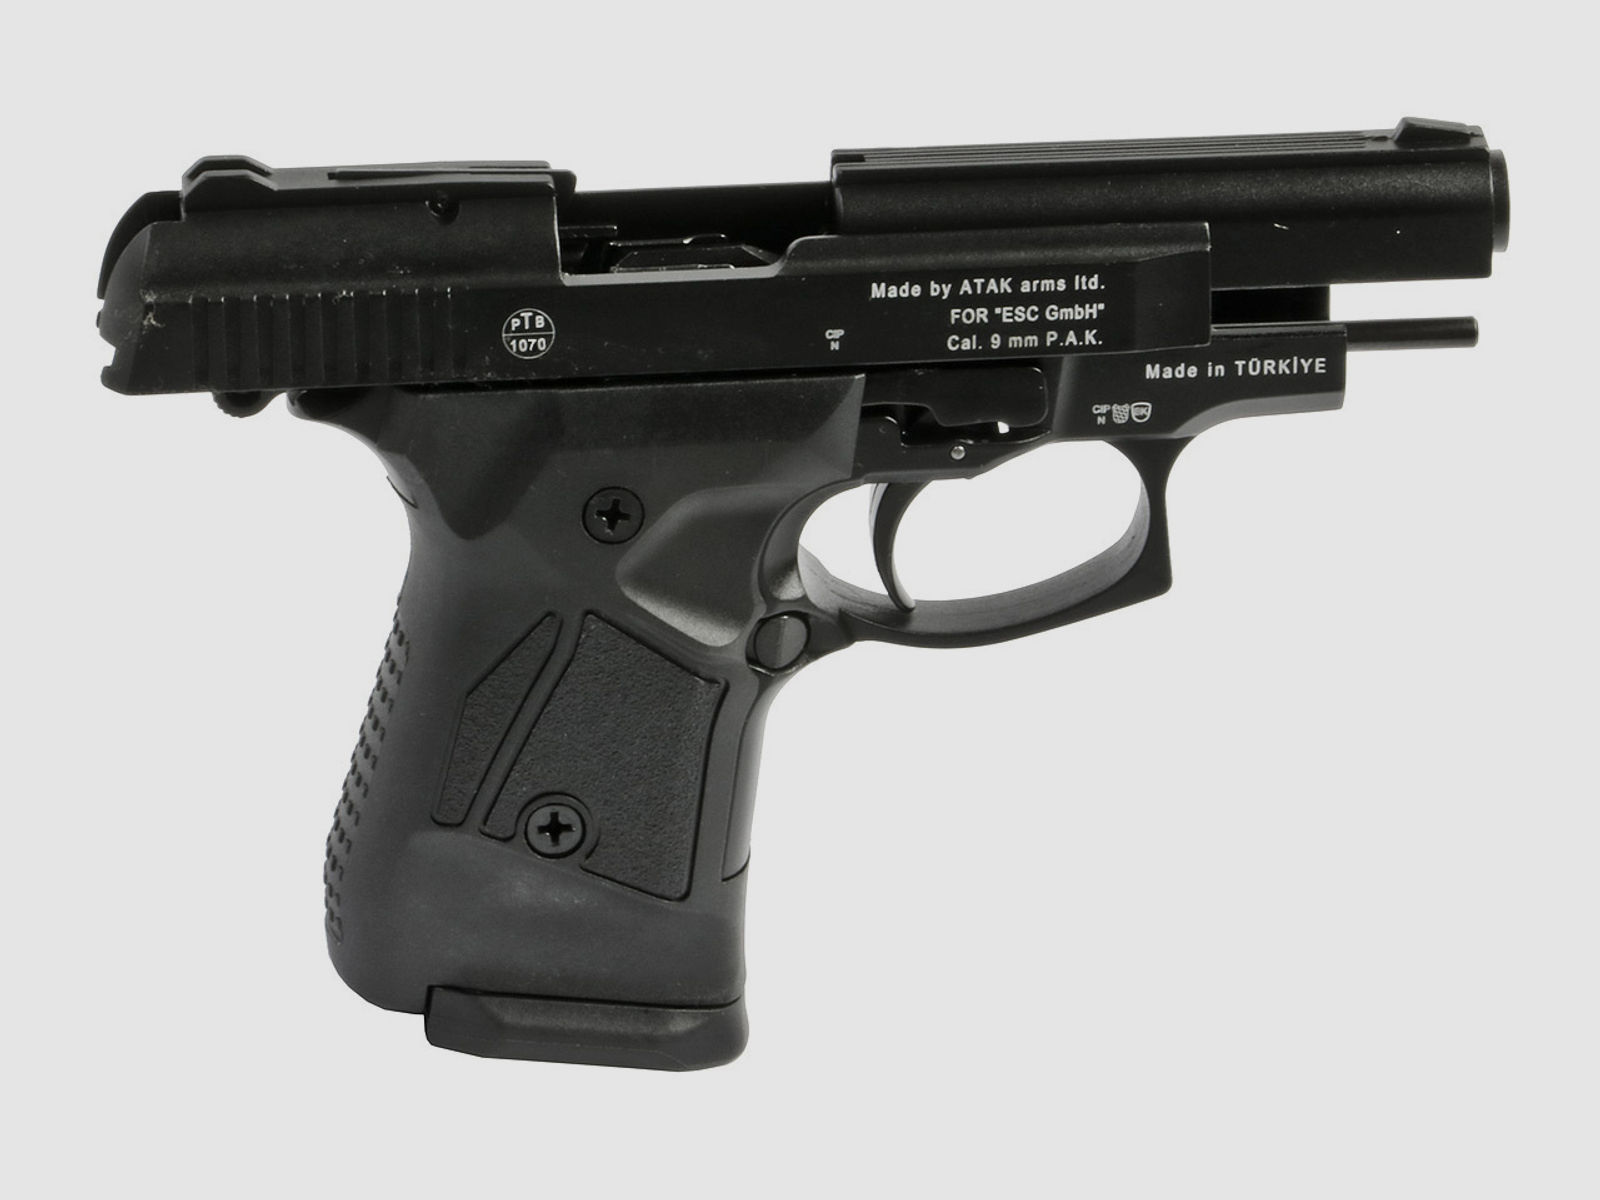 Schreckschuss Pistole Zoraki 914 schwarz PTB 1070 Kaliber 9 mm P.A.K. (P18) + 50 Schuss